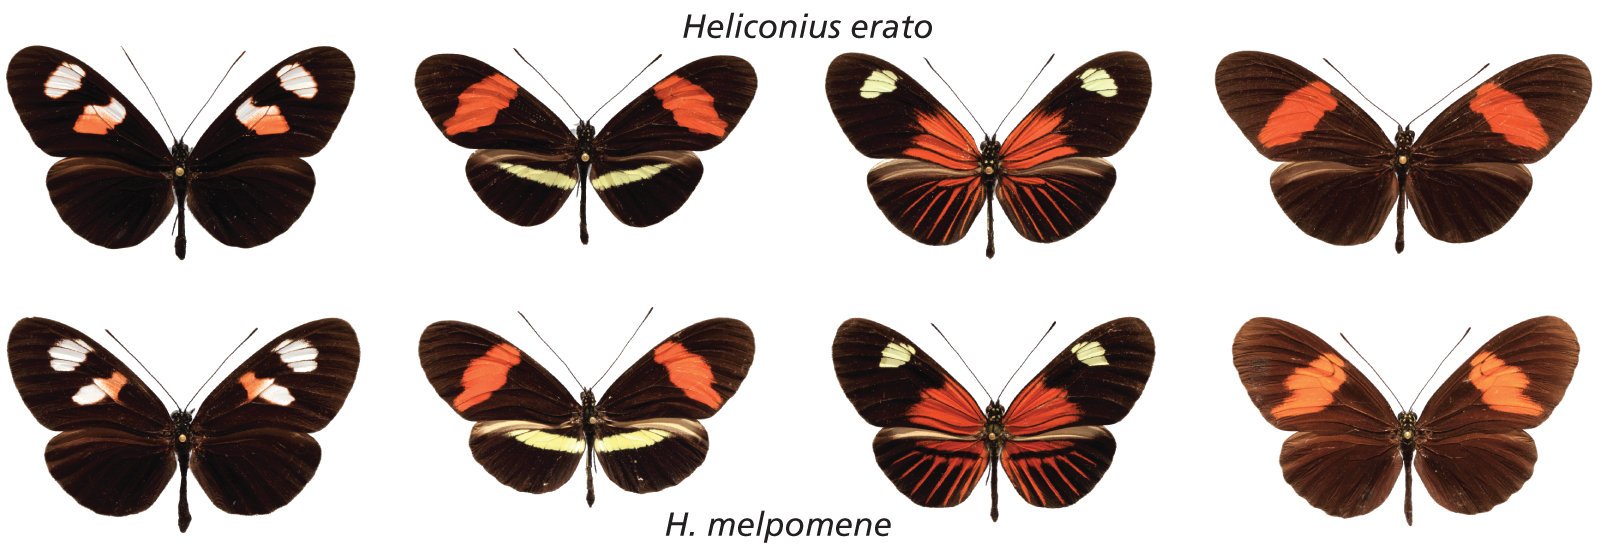 Heliconius mimicry